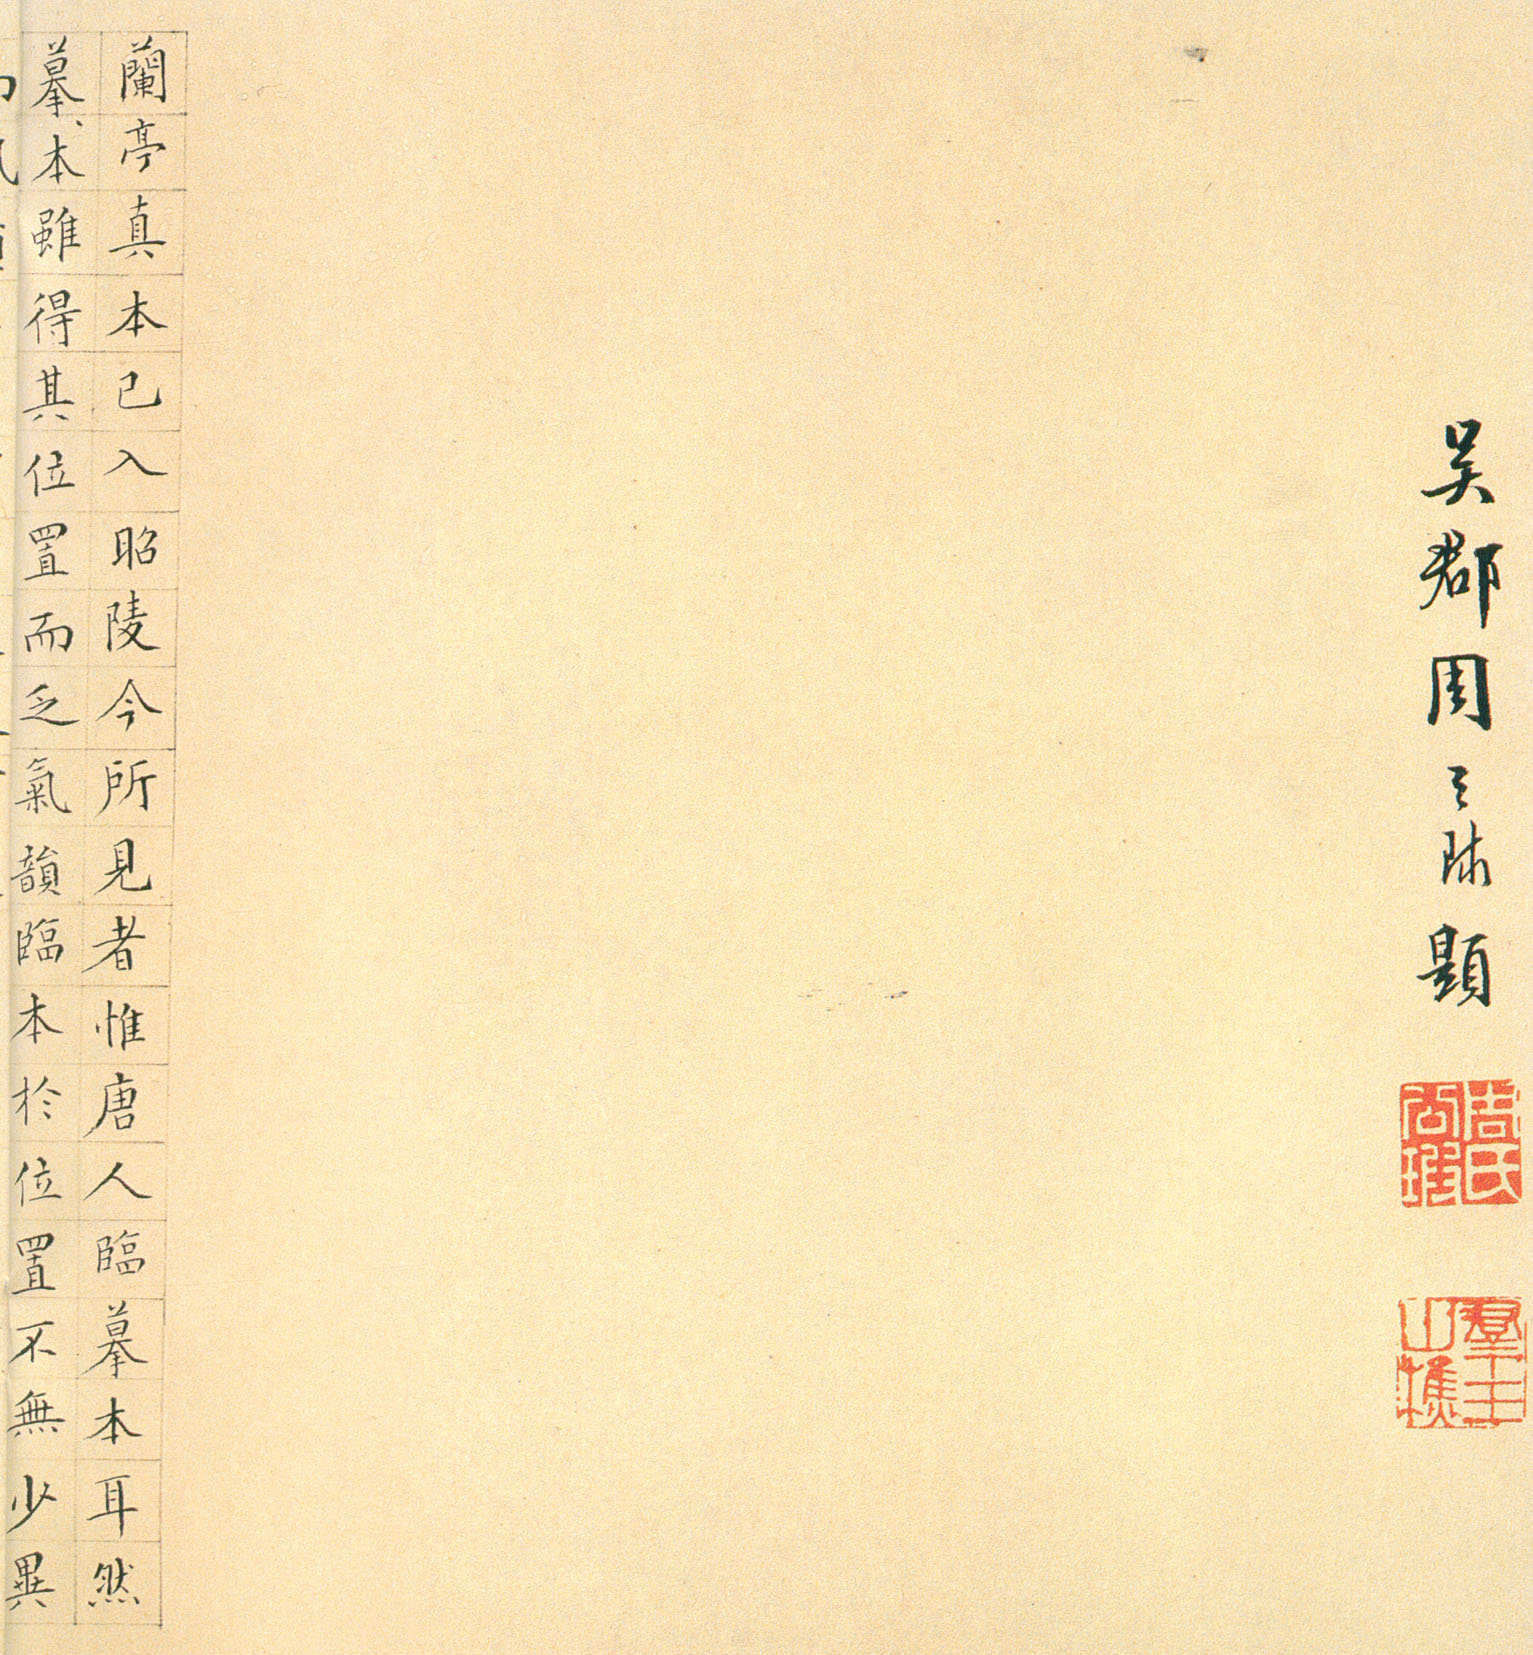 褚遂良《临兰亭序》卷-台北故宫博物院藏(图18)